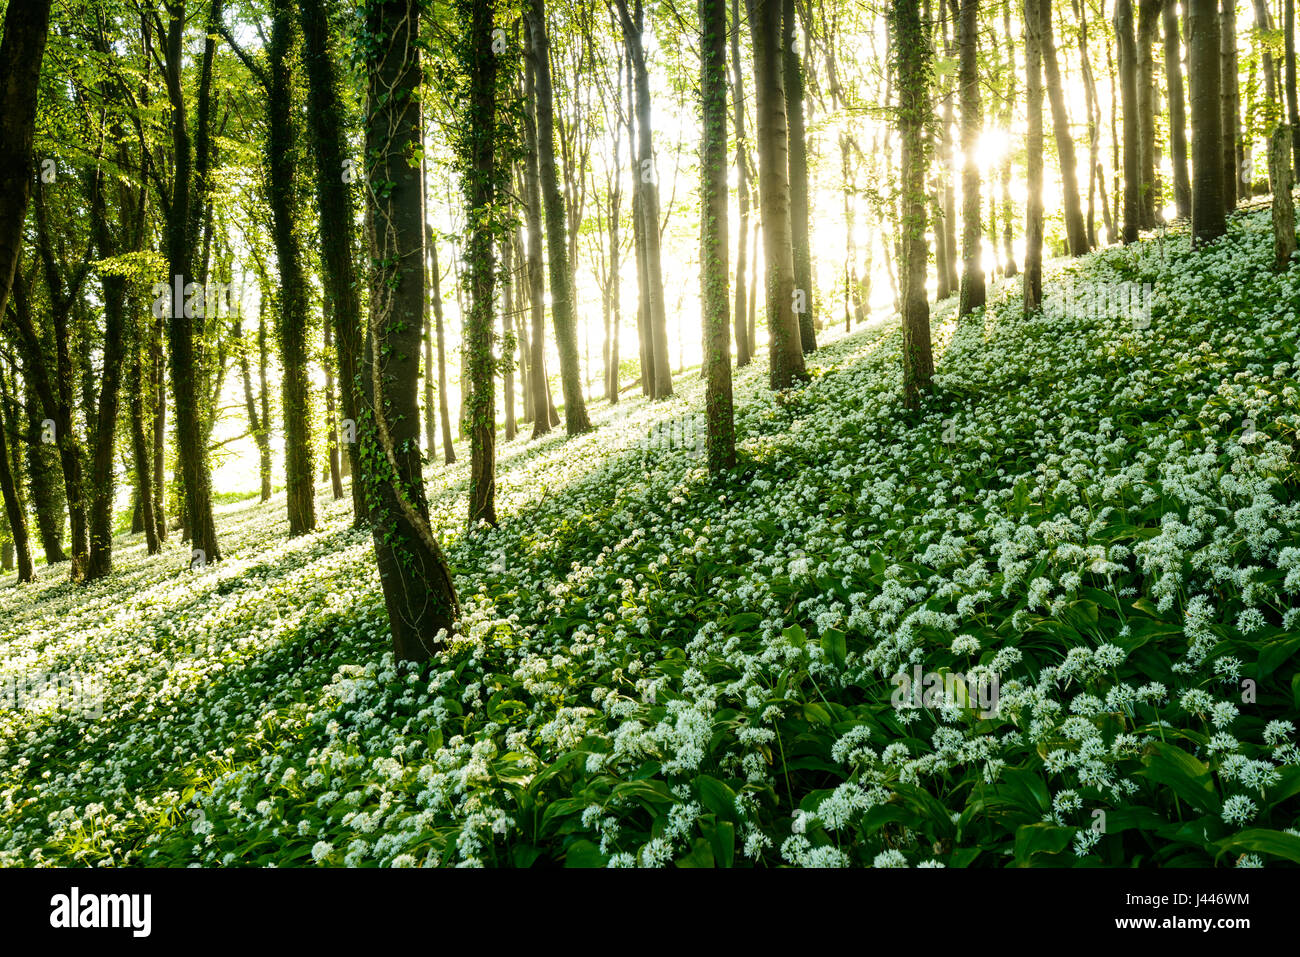 Cerca de Dorchester, Dorset, Reino Unido. 10 de mayo de 2017. La luz del sol se filtra a través de wold ajo cubierto de bosques. El aire es thich con el dulce olor olor de ajo. Dan crédito Tucker/Alamy Live News Foto de stock